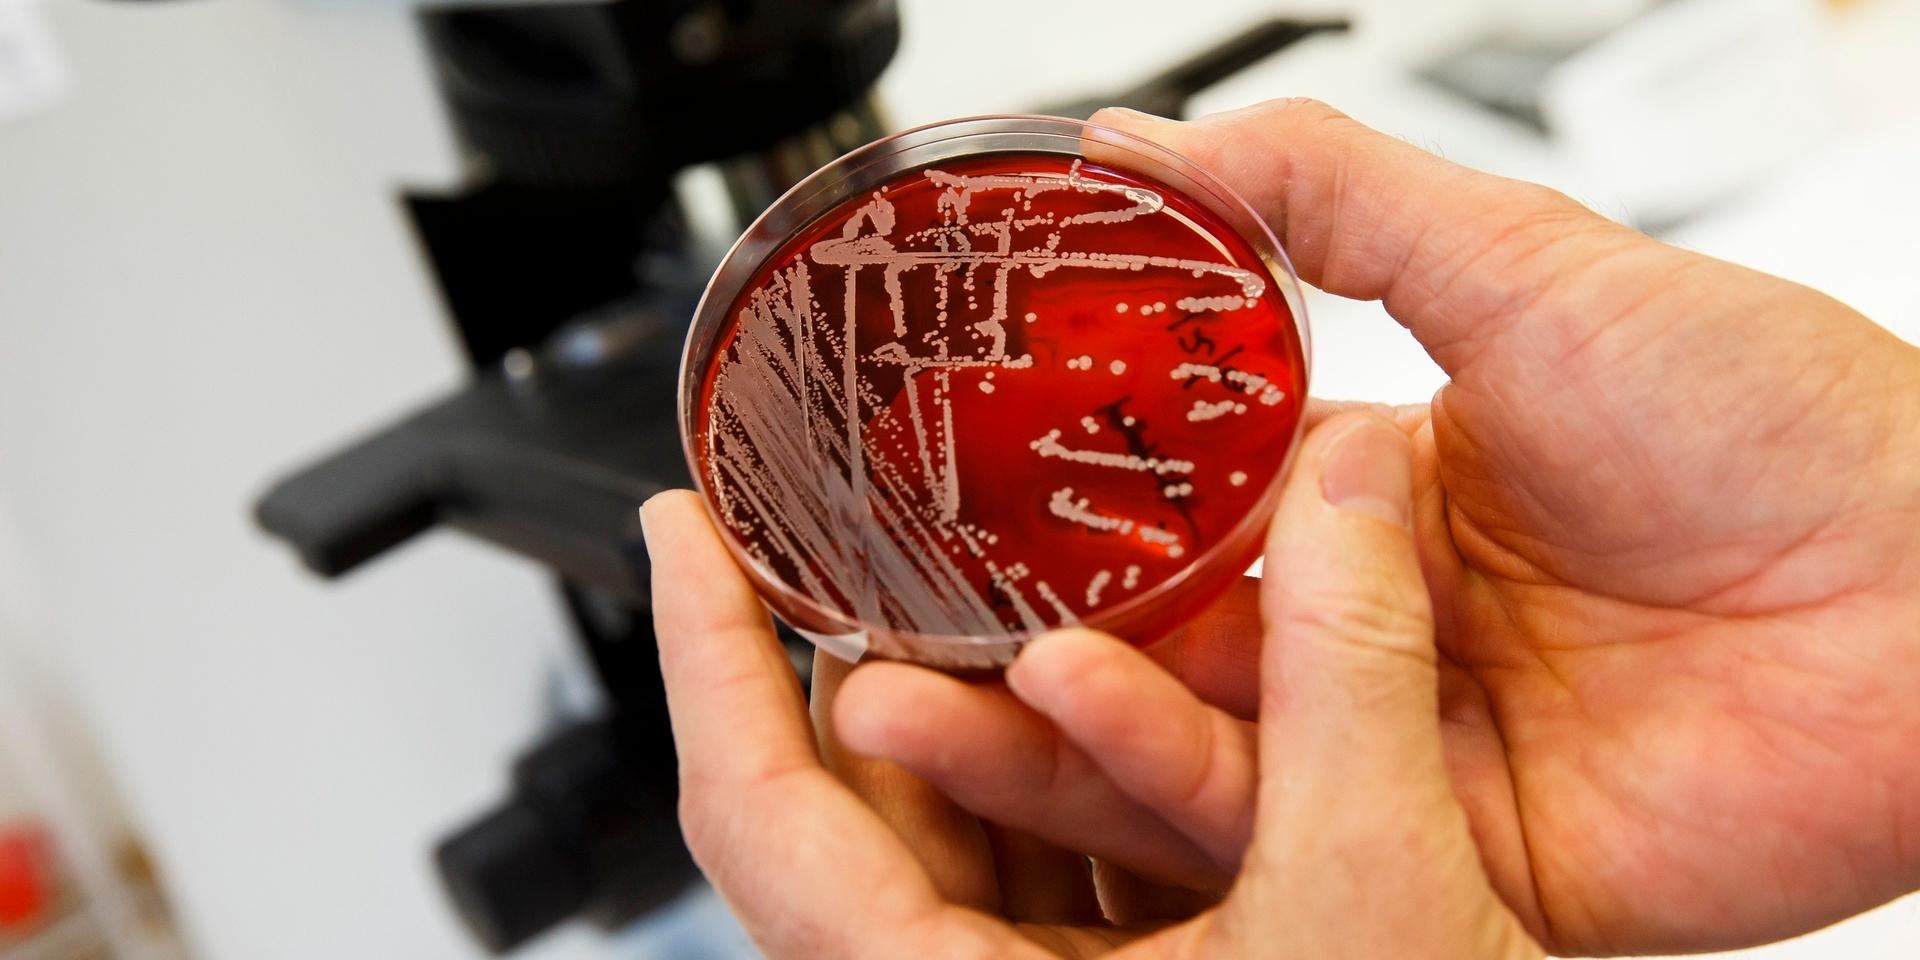 Multiresistenta bakterier är ett av de största hoten mot mänsklighetens hälsa.